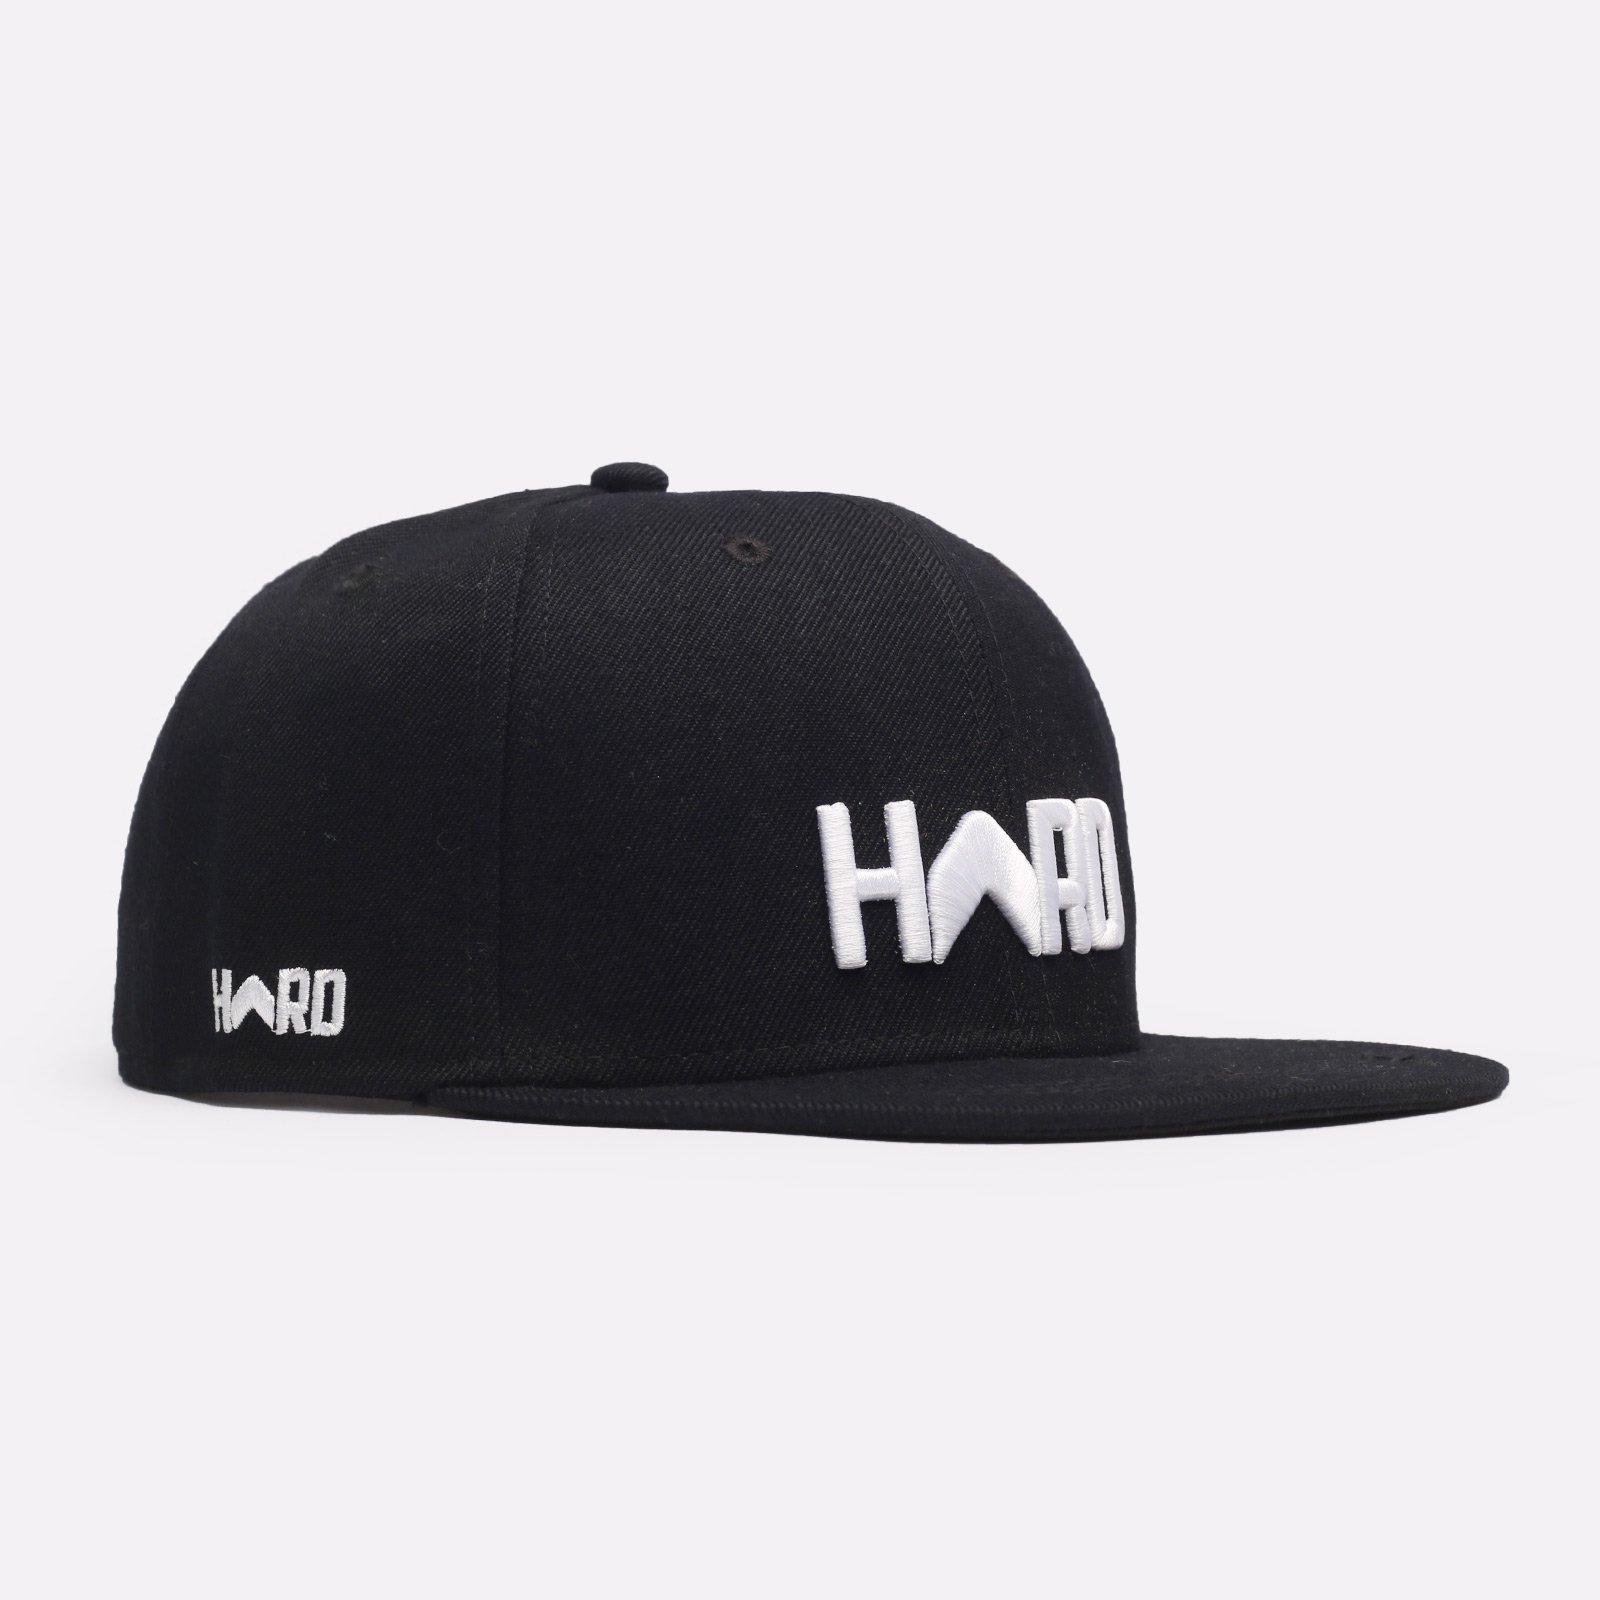 мужская черная кепка Hard Logo Snapback Hard black/wht-0106 - цена, описание, фото 1